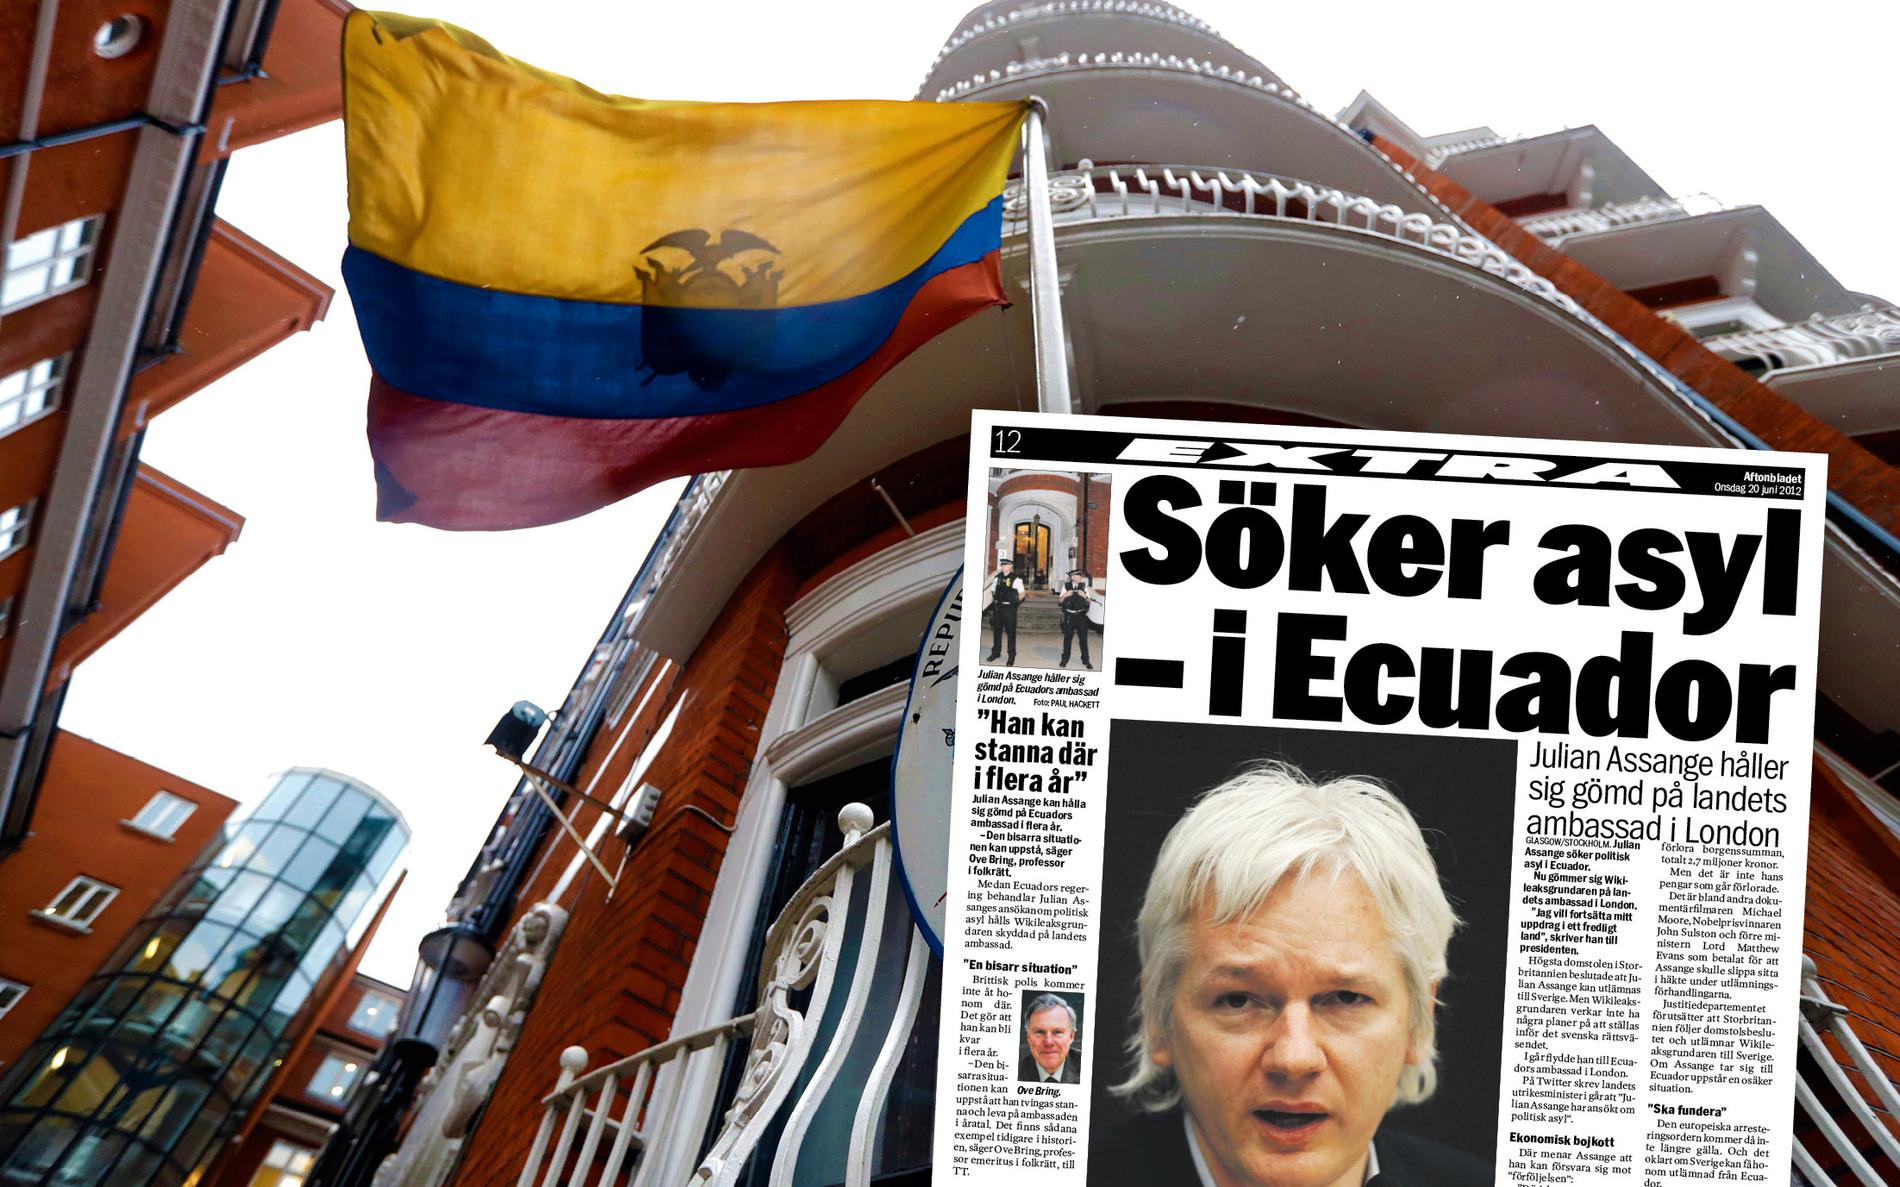 JUNI 2012. Assange flyr in på Ecuadors ambassad i London, som han inte lämnat sedan dess.